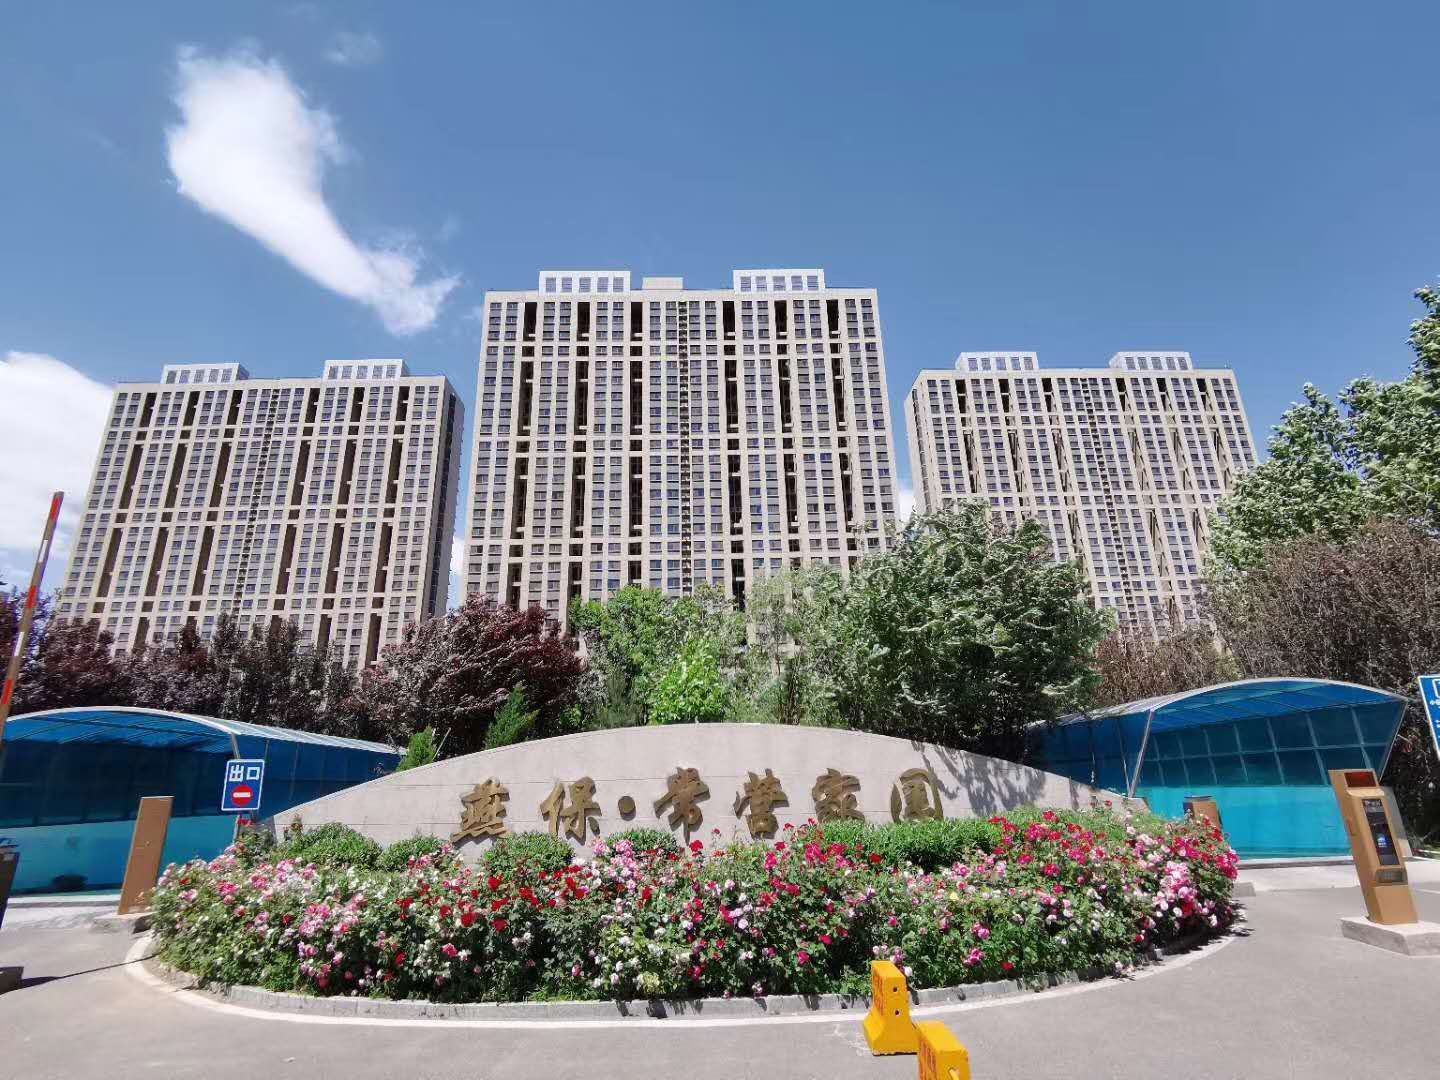 燕保·常营家园-北京市嘉宝物业管理有限公司官网